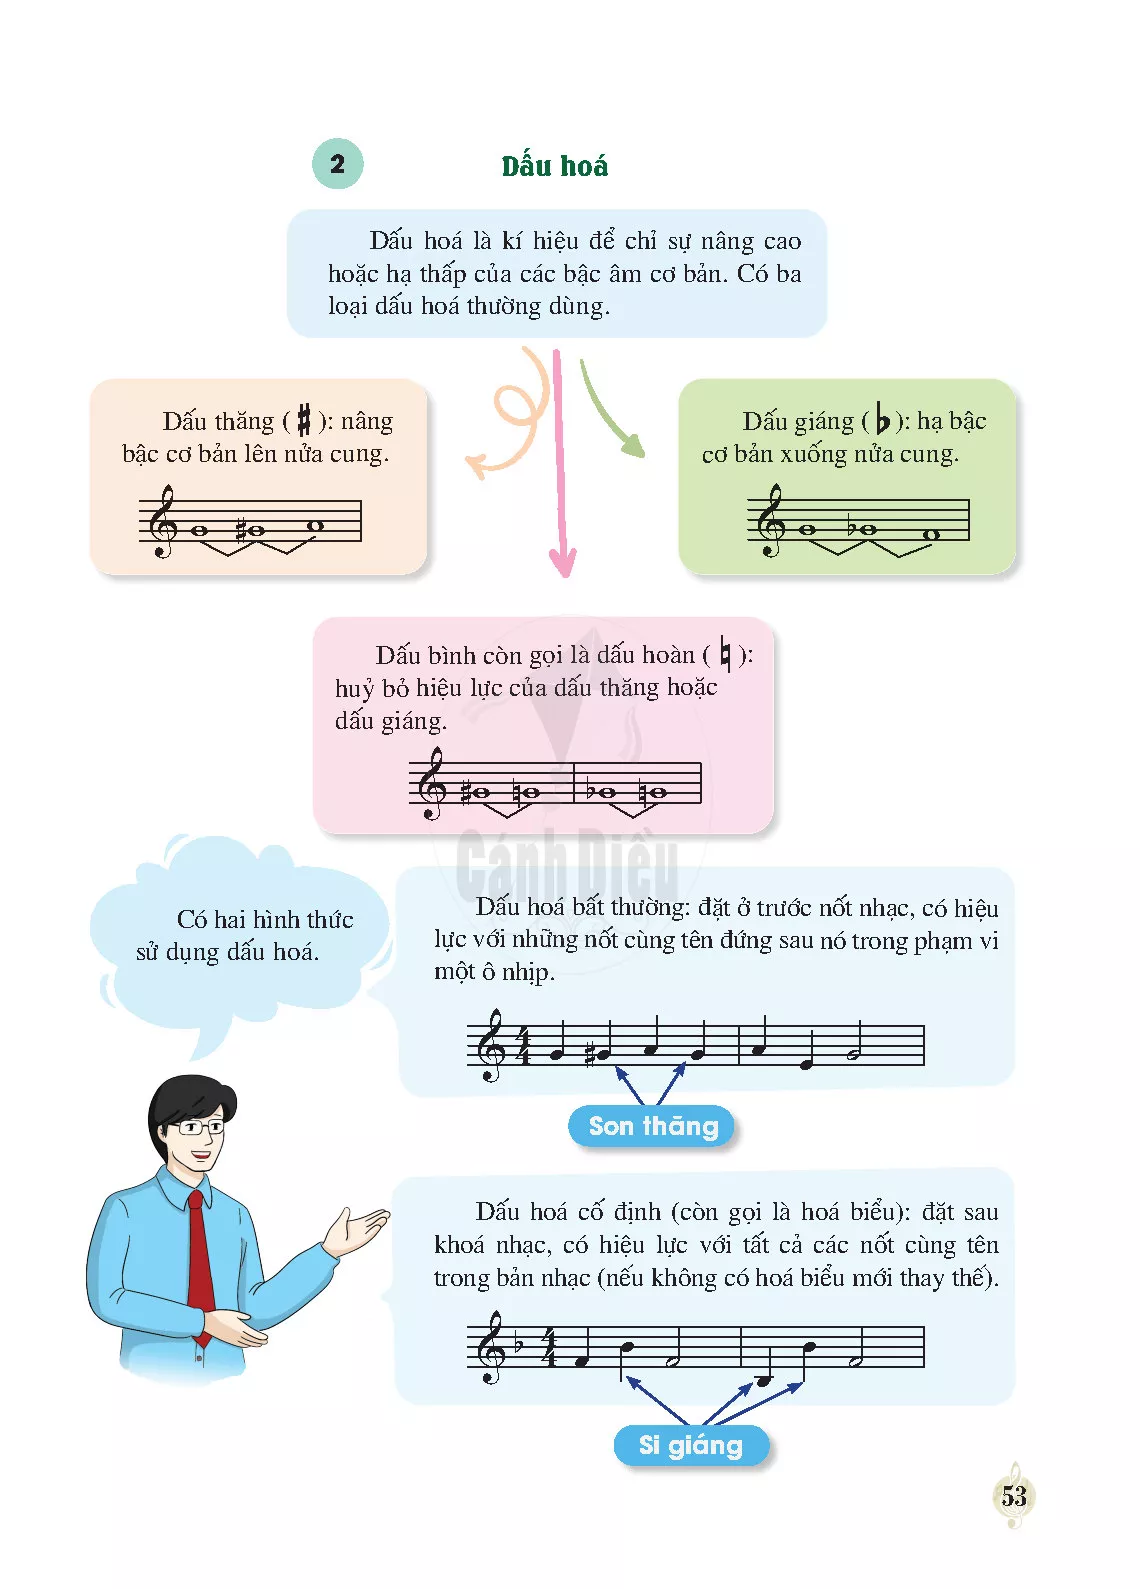 Lí thuyết âm nhạc: Các bậc chuyển hoá và dấu hoá 